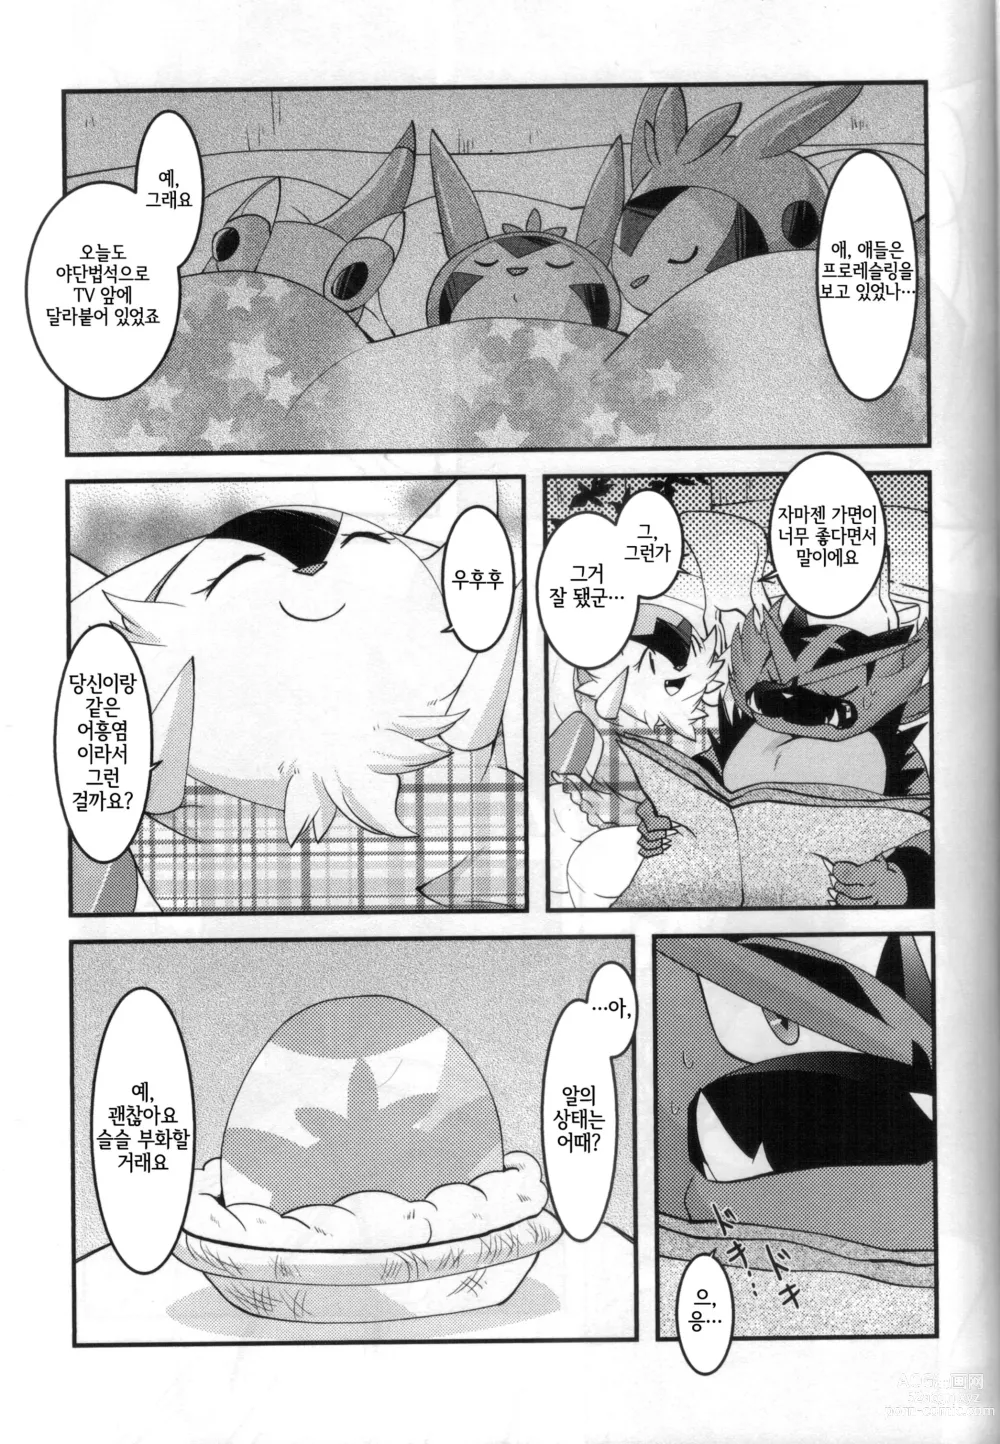 Page 8 of doujinshi 아빠도 엄마한테 어리광 부리고 싶어!